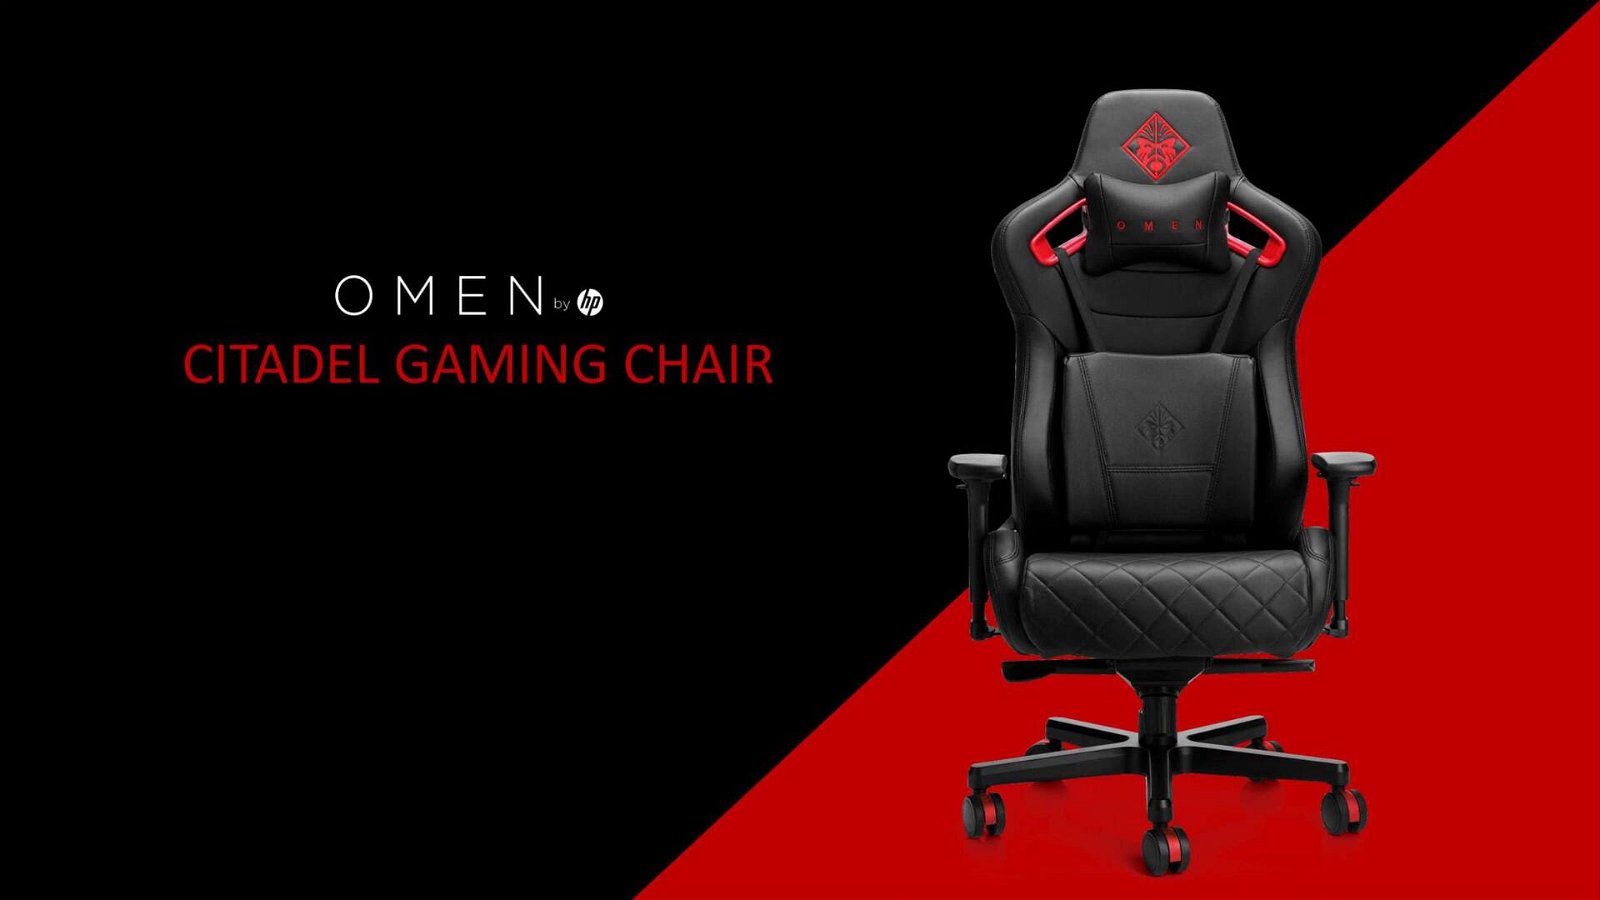 Immagine di Omen By Citadel: bellissima sedia gaming in sconto del 30%! Prezzo più basso della rete!